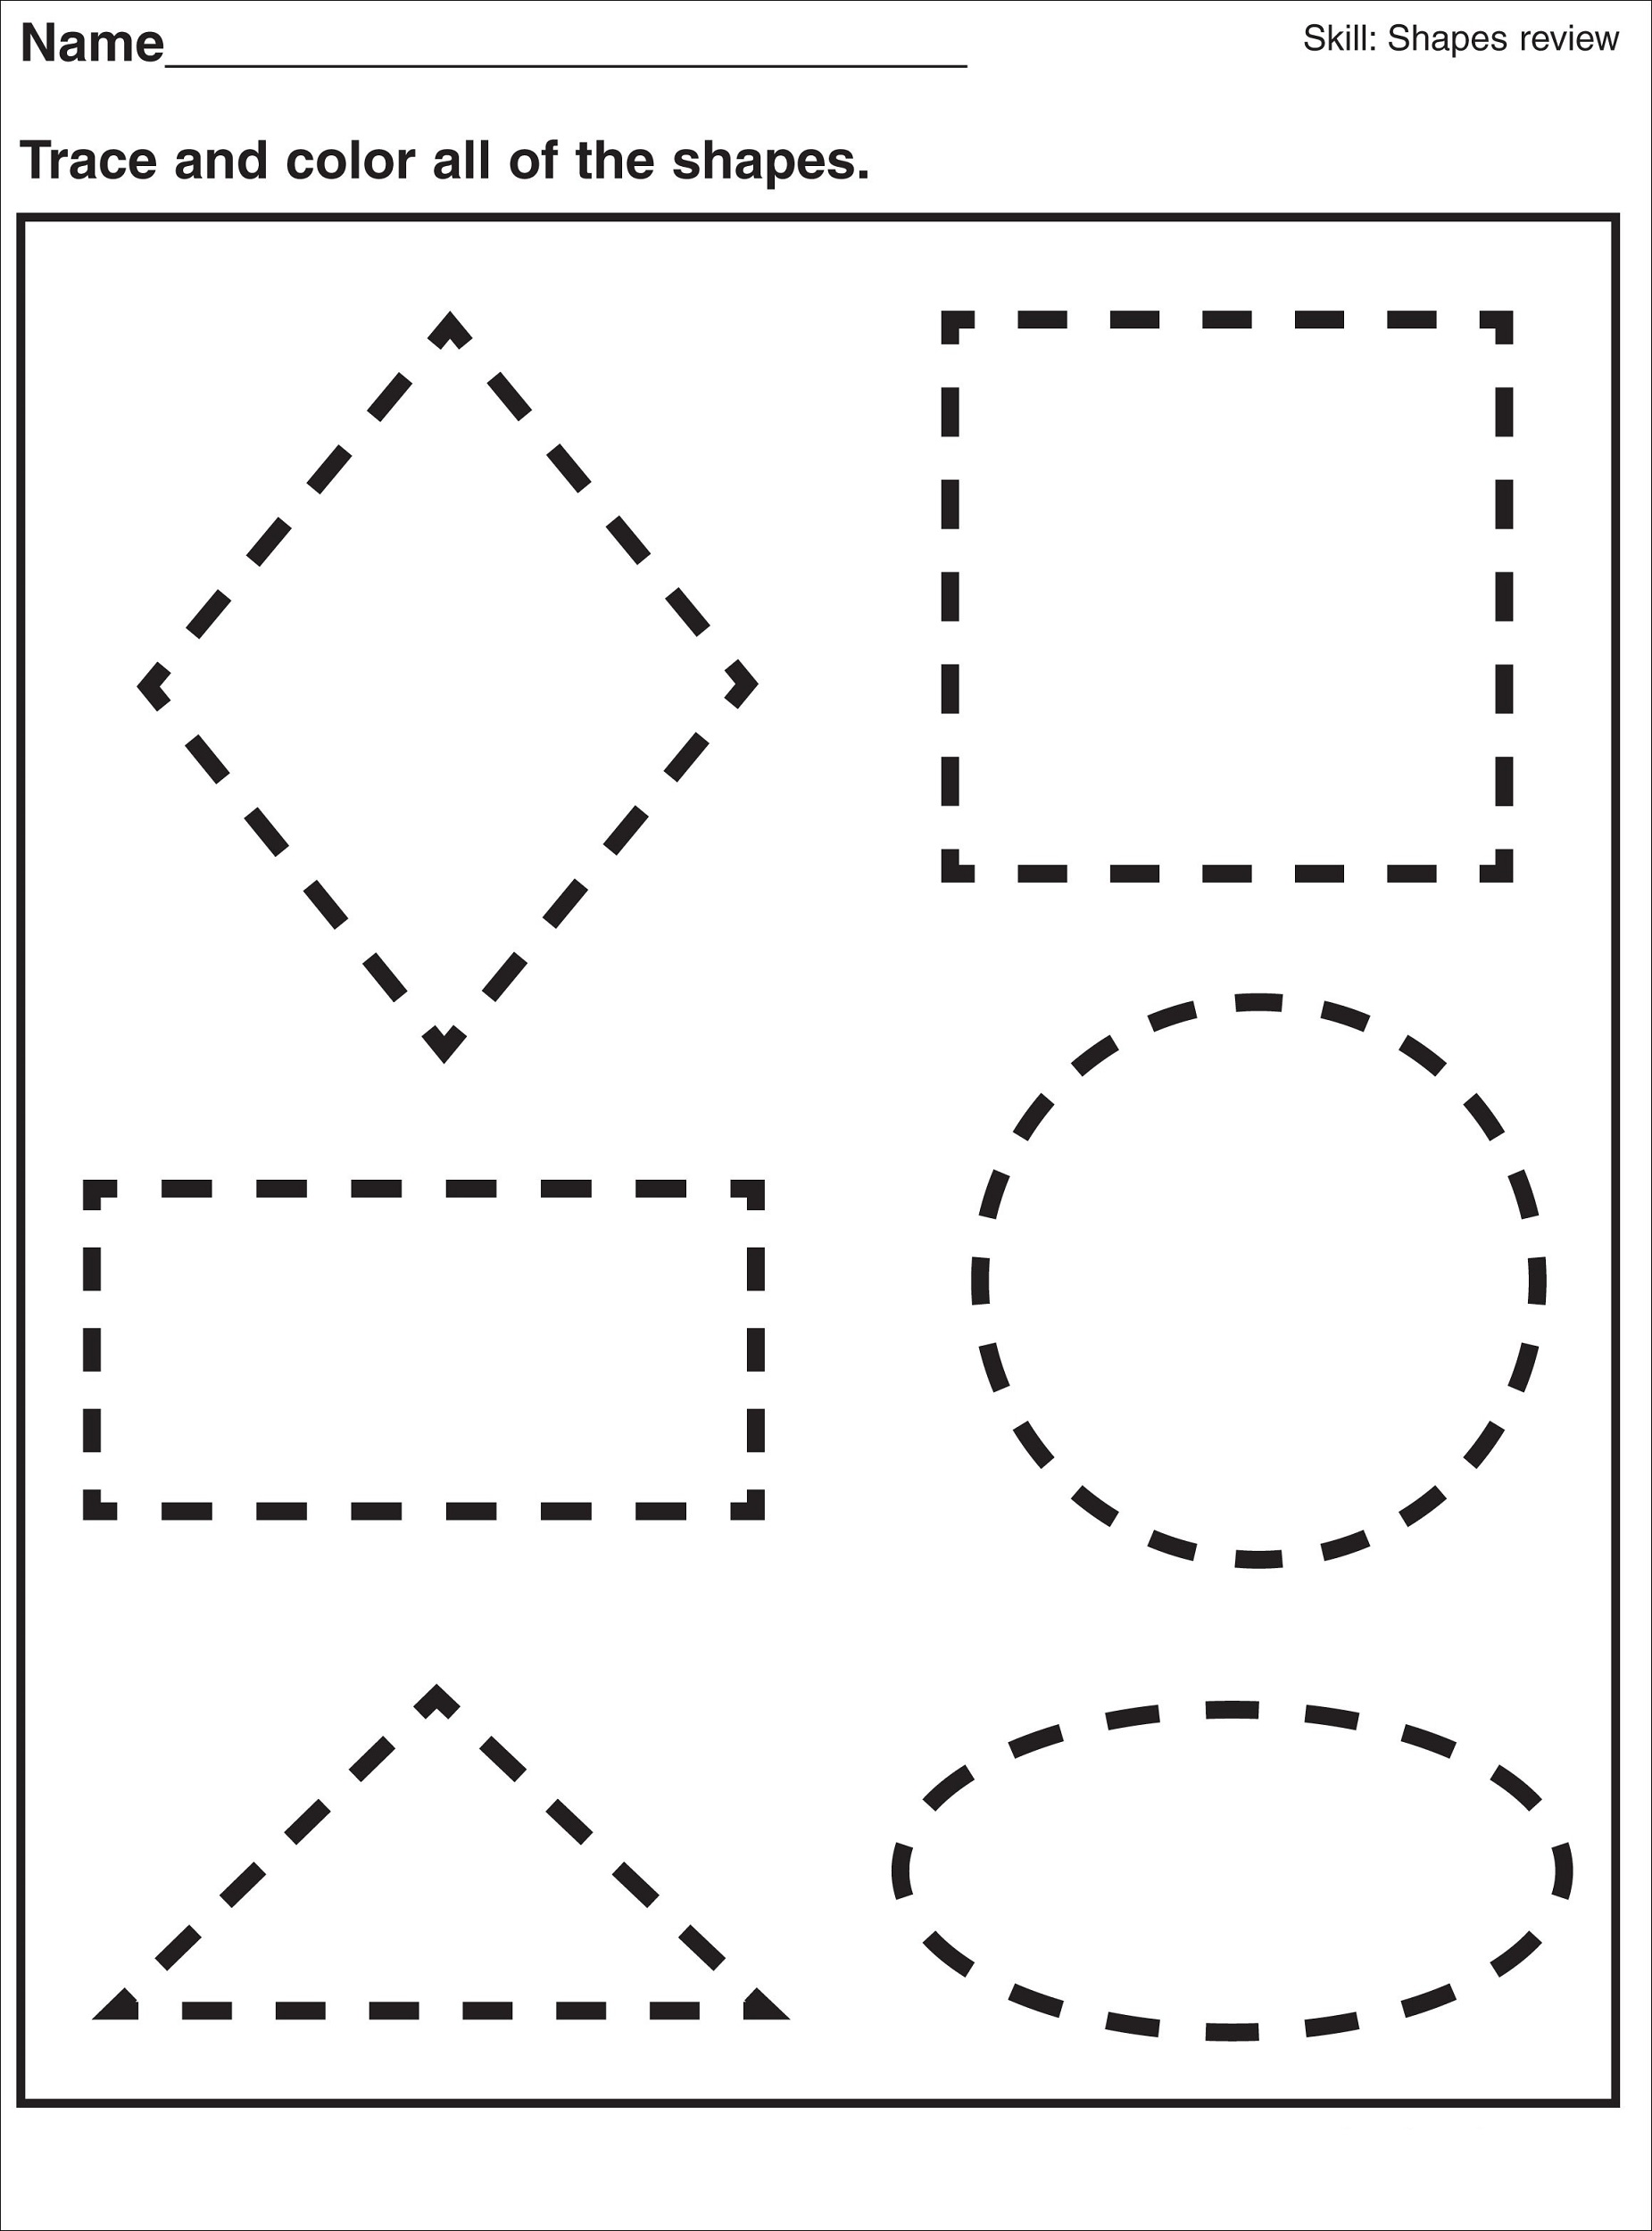 shapes-preschool-worksheet-tracing-worksheets-preschool-kids